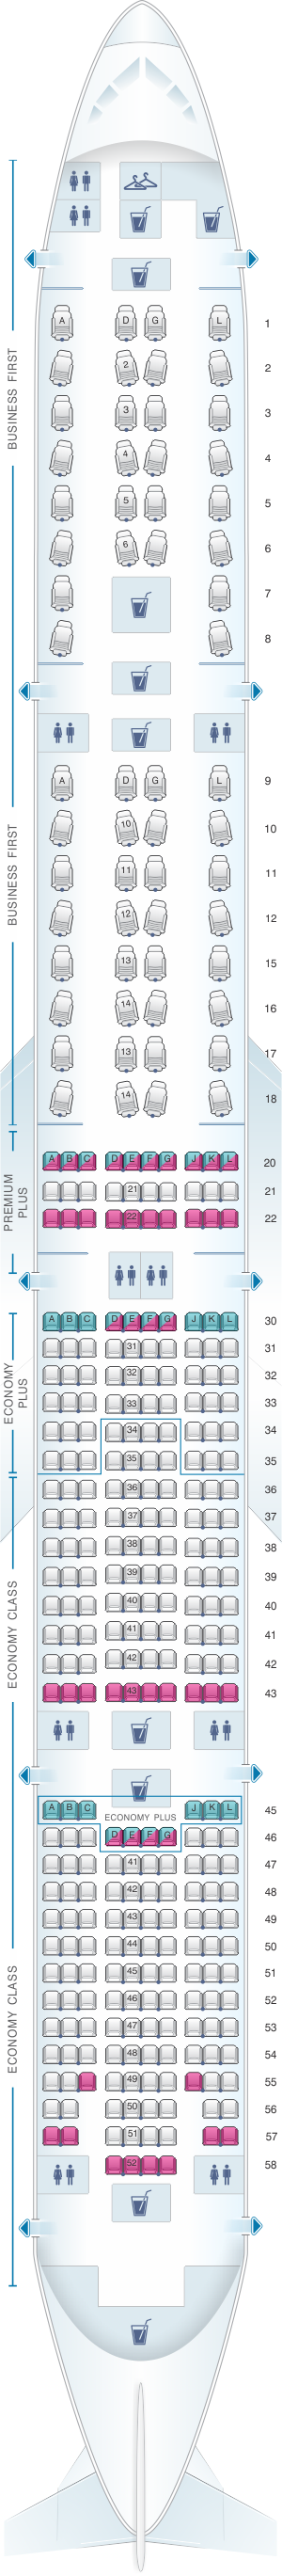 777 seat chart